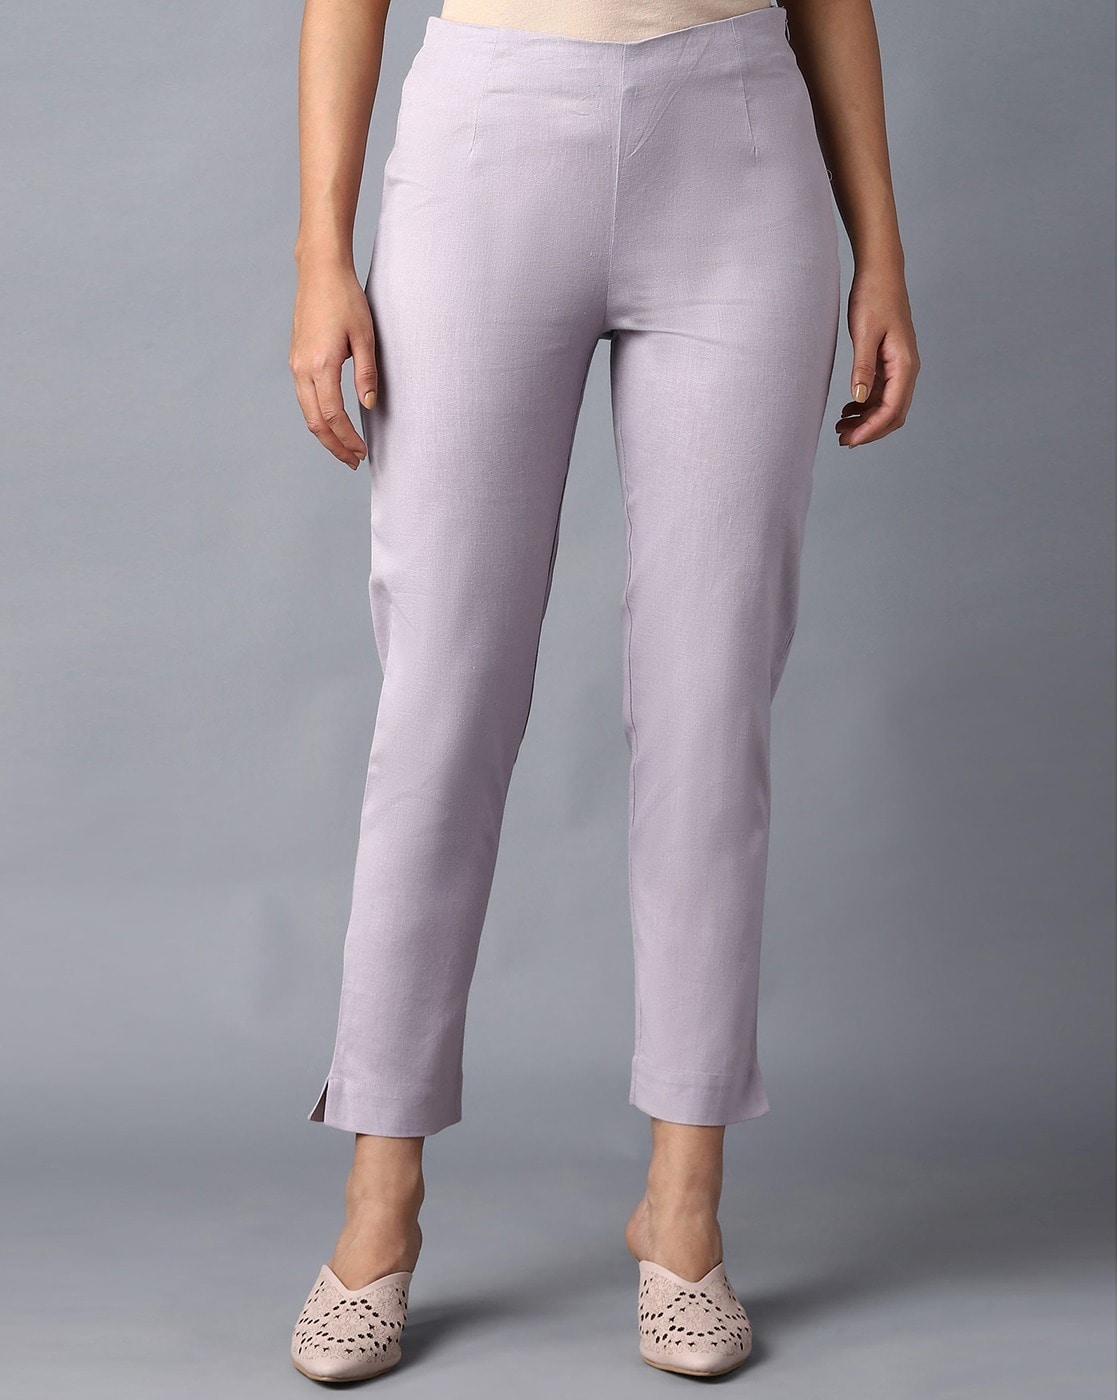 Cotton Slub Ankle Length Pants in 8 colors DY5255